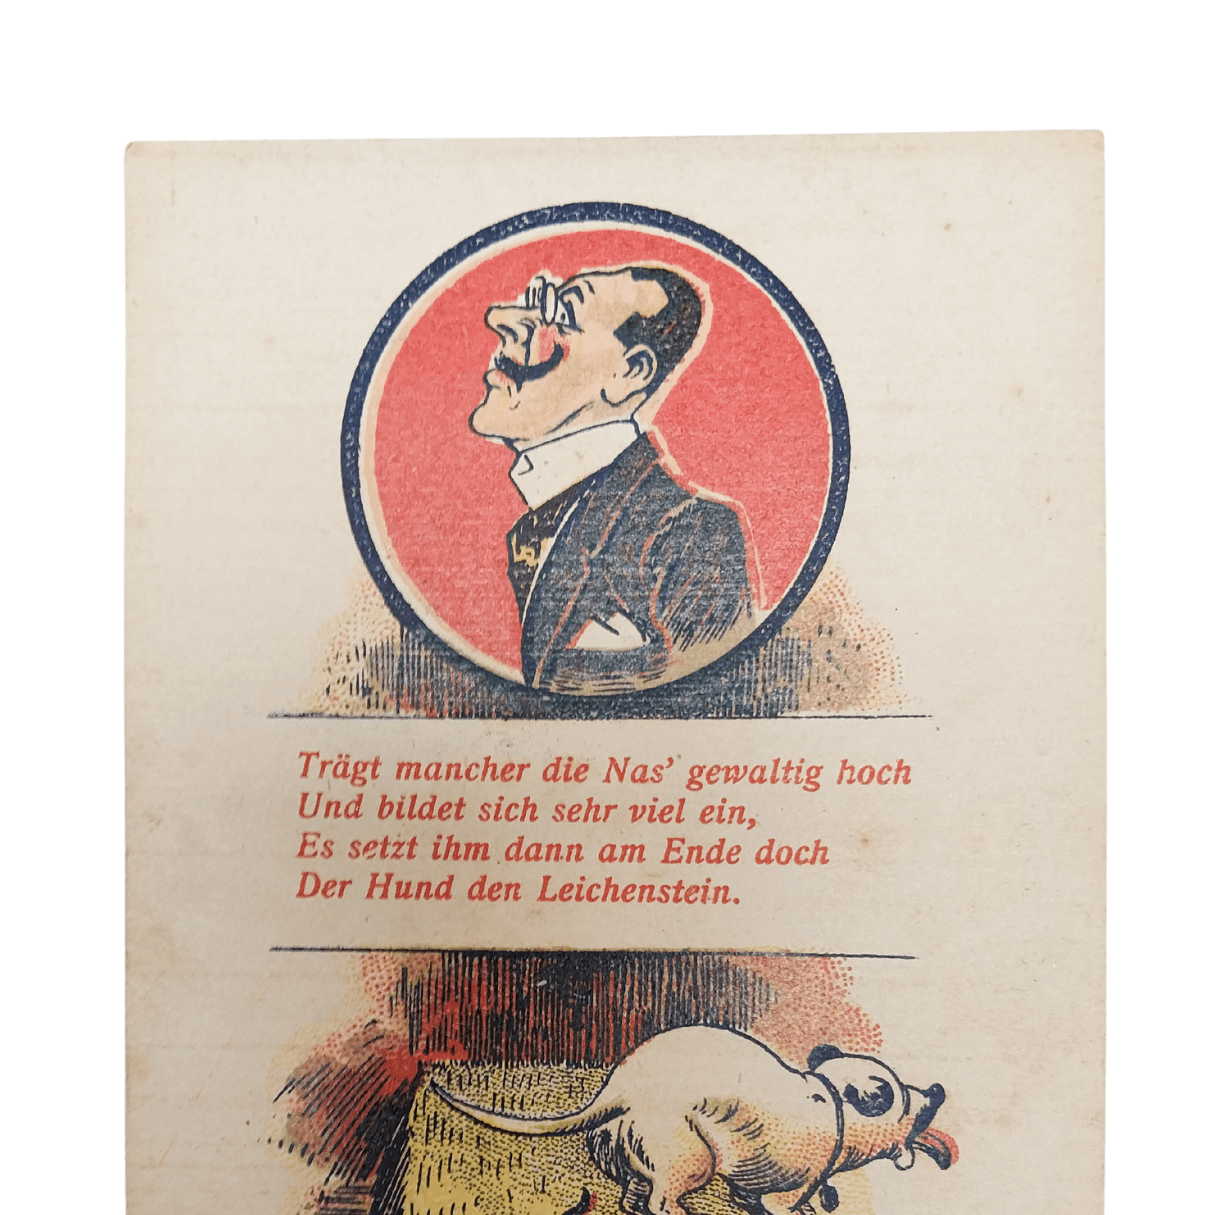 Cartão Postal Antigo Alemão de Ano Novo (Prosit Neujahr) - Cachorro